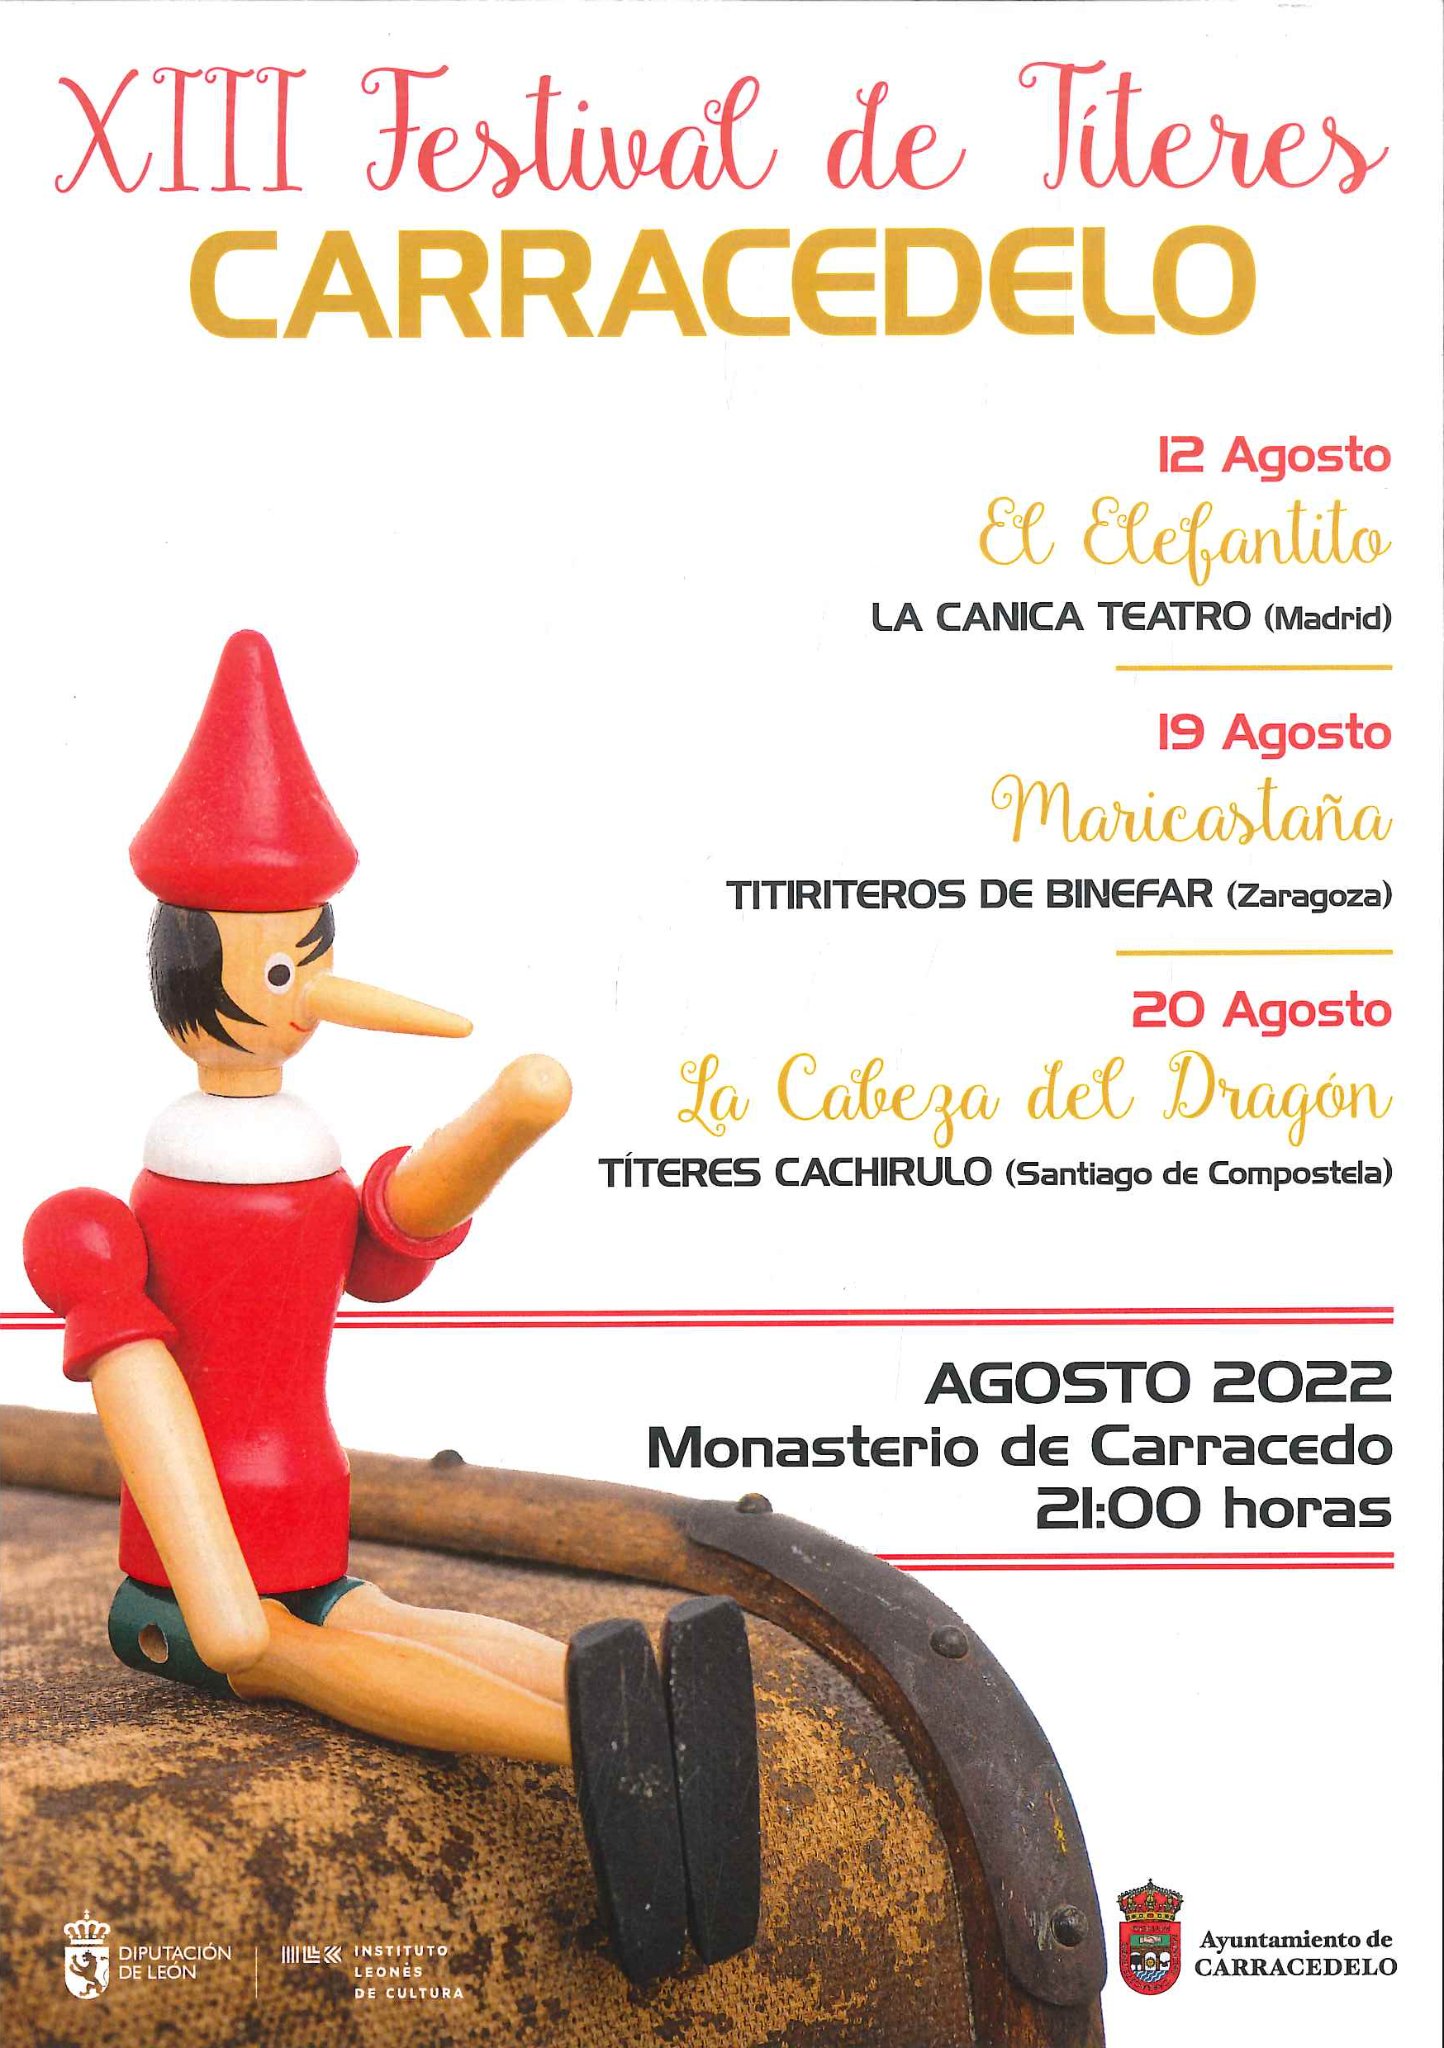 El XIII Festival de Títeres de Carracedelo llena agosto de actividades familiares 2